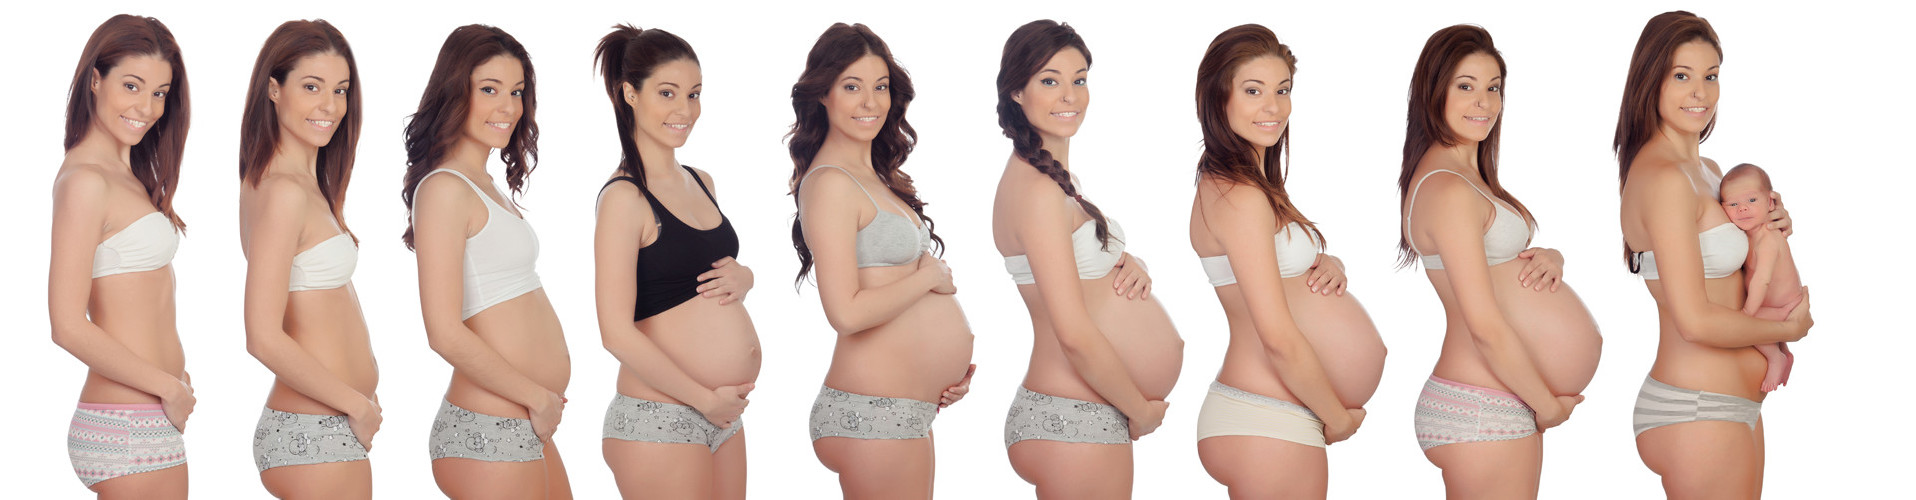 Junge Frau in 9 verschiedenen Stadien der Schwangerschaft © Gelpi, stock.adobe.com